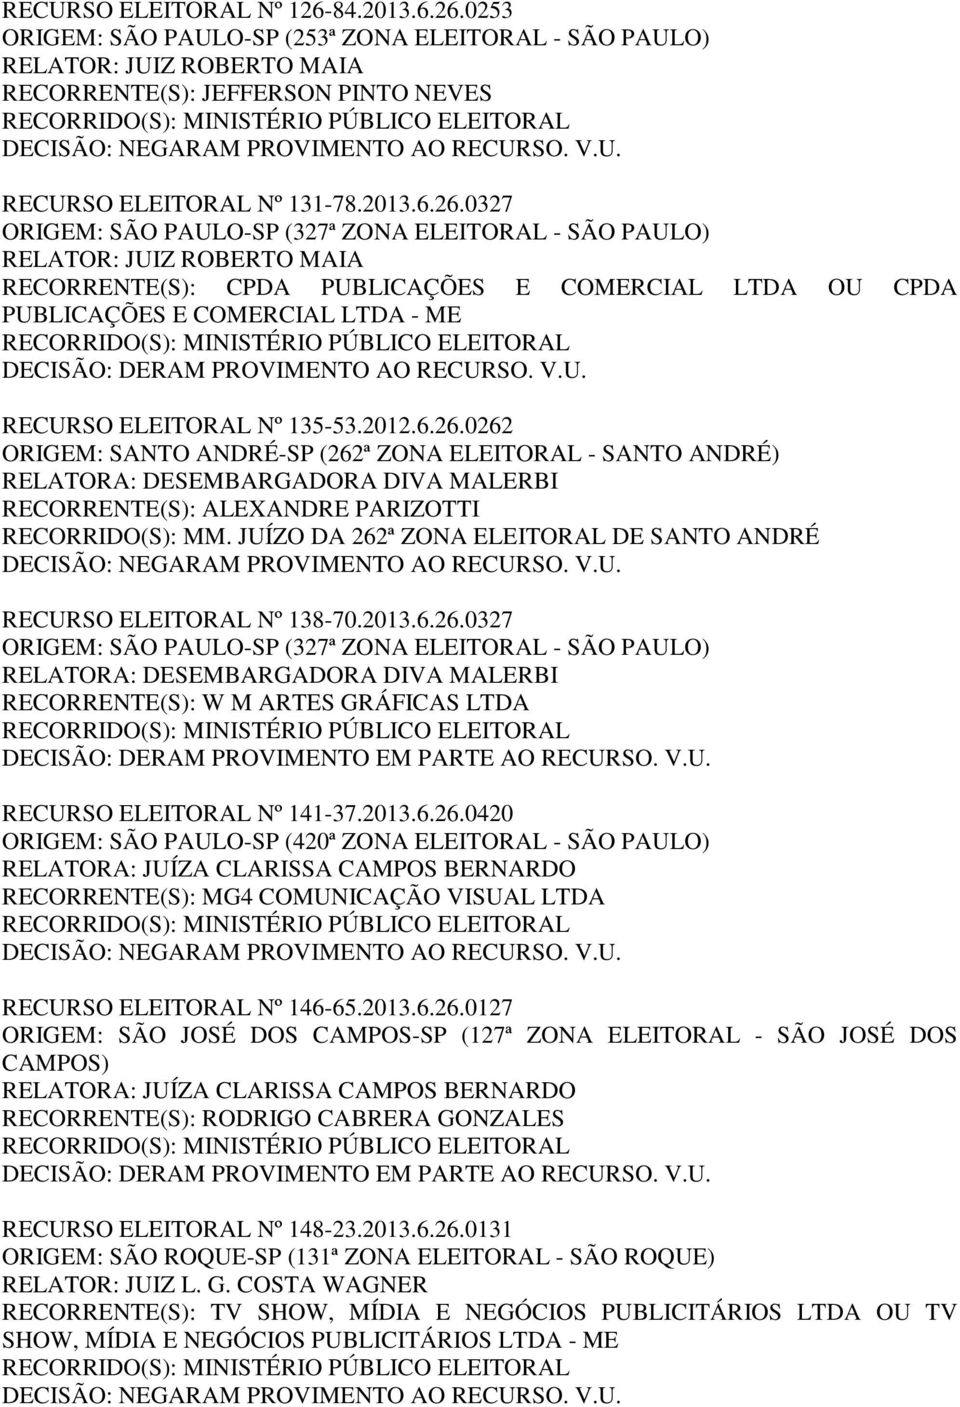 0253 ORIGEM: SÃO PAULO-SP (253ª ZONA ELEITORAL - SÃO PAULO) RECORRENTE(S): JEFFERSON PINTO NEVES RECURSO ELEITORAL Nº 131-78.2013.6.26.